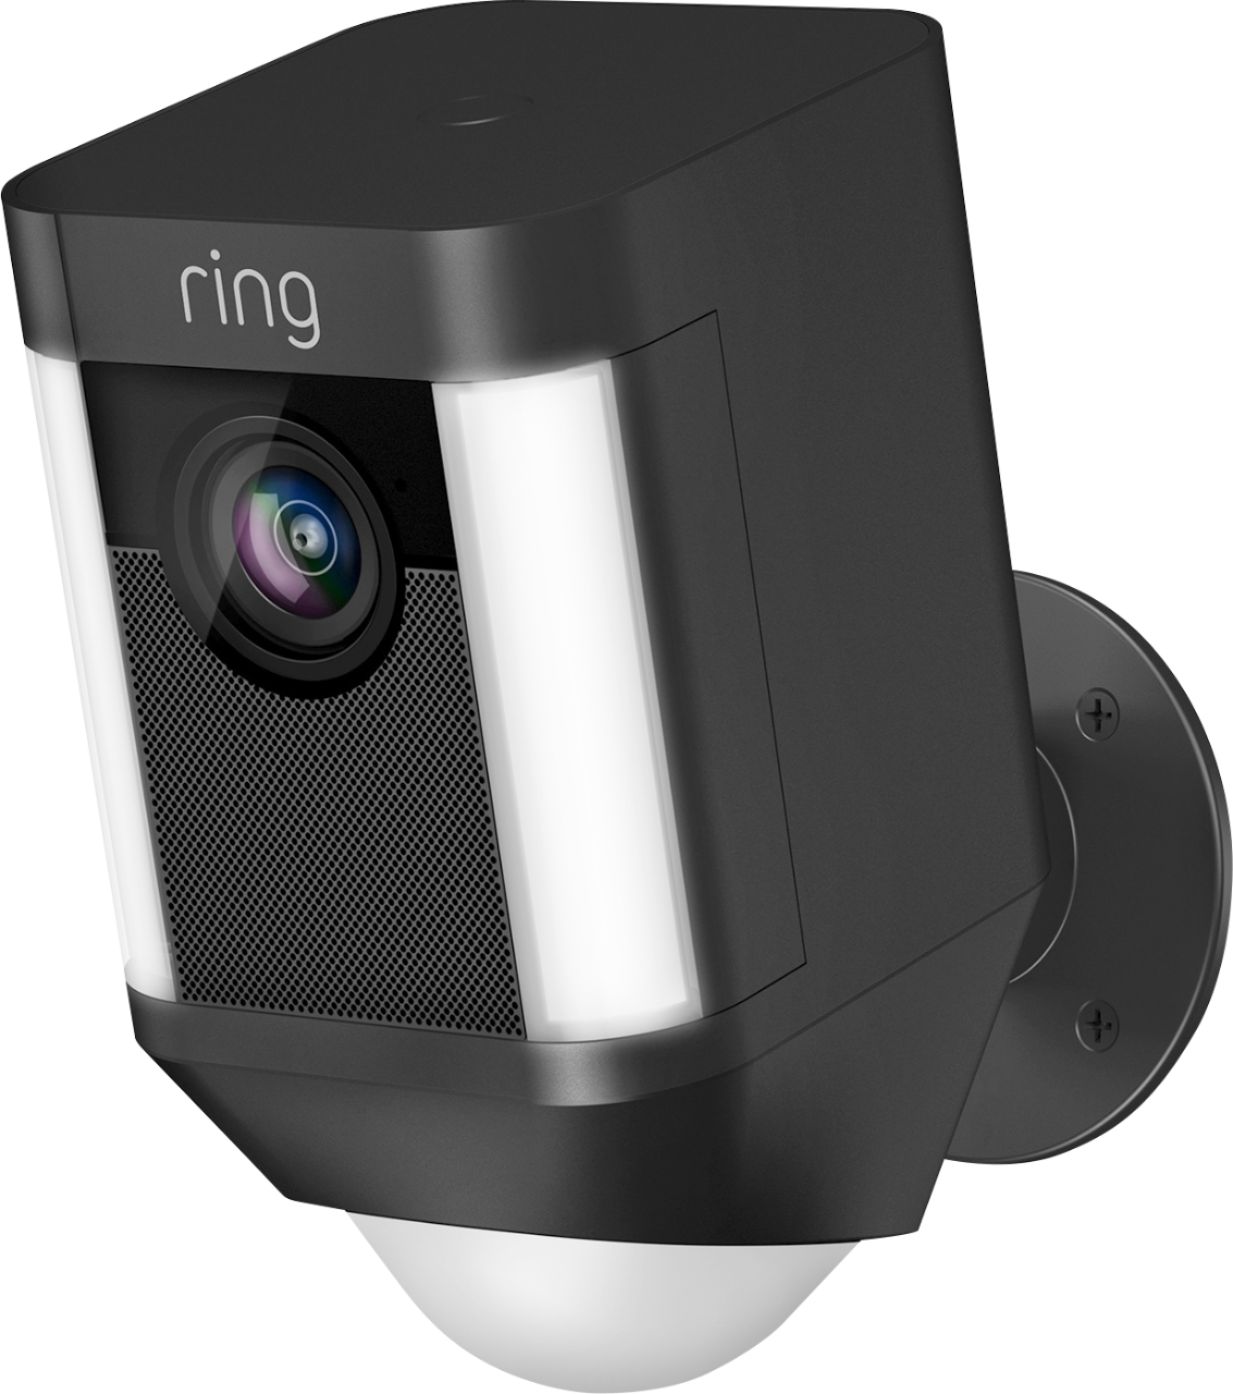 ring floodlight cam 2 pack best buy